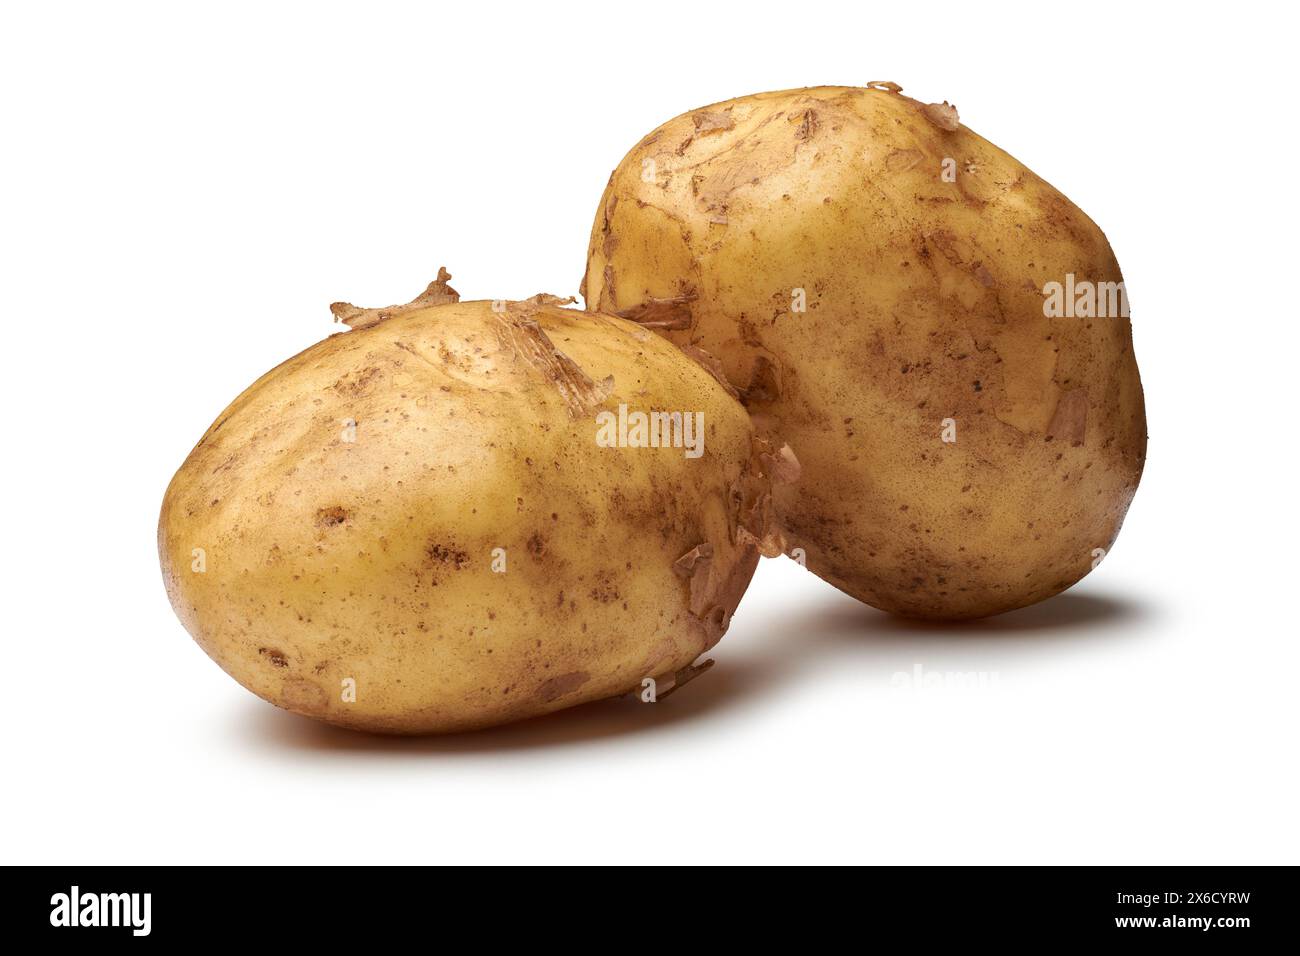 Nahaufnahme von ungeschälten rohen Kartoffeln, stärkehaltigem, knurrigem Gemüse mit isoliertem weißem Hintergrund Stockfoto